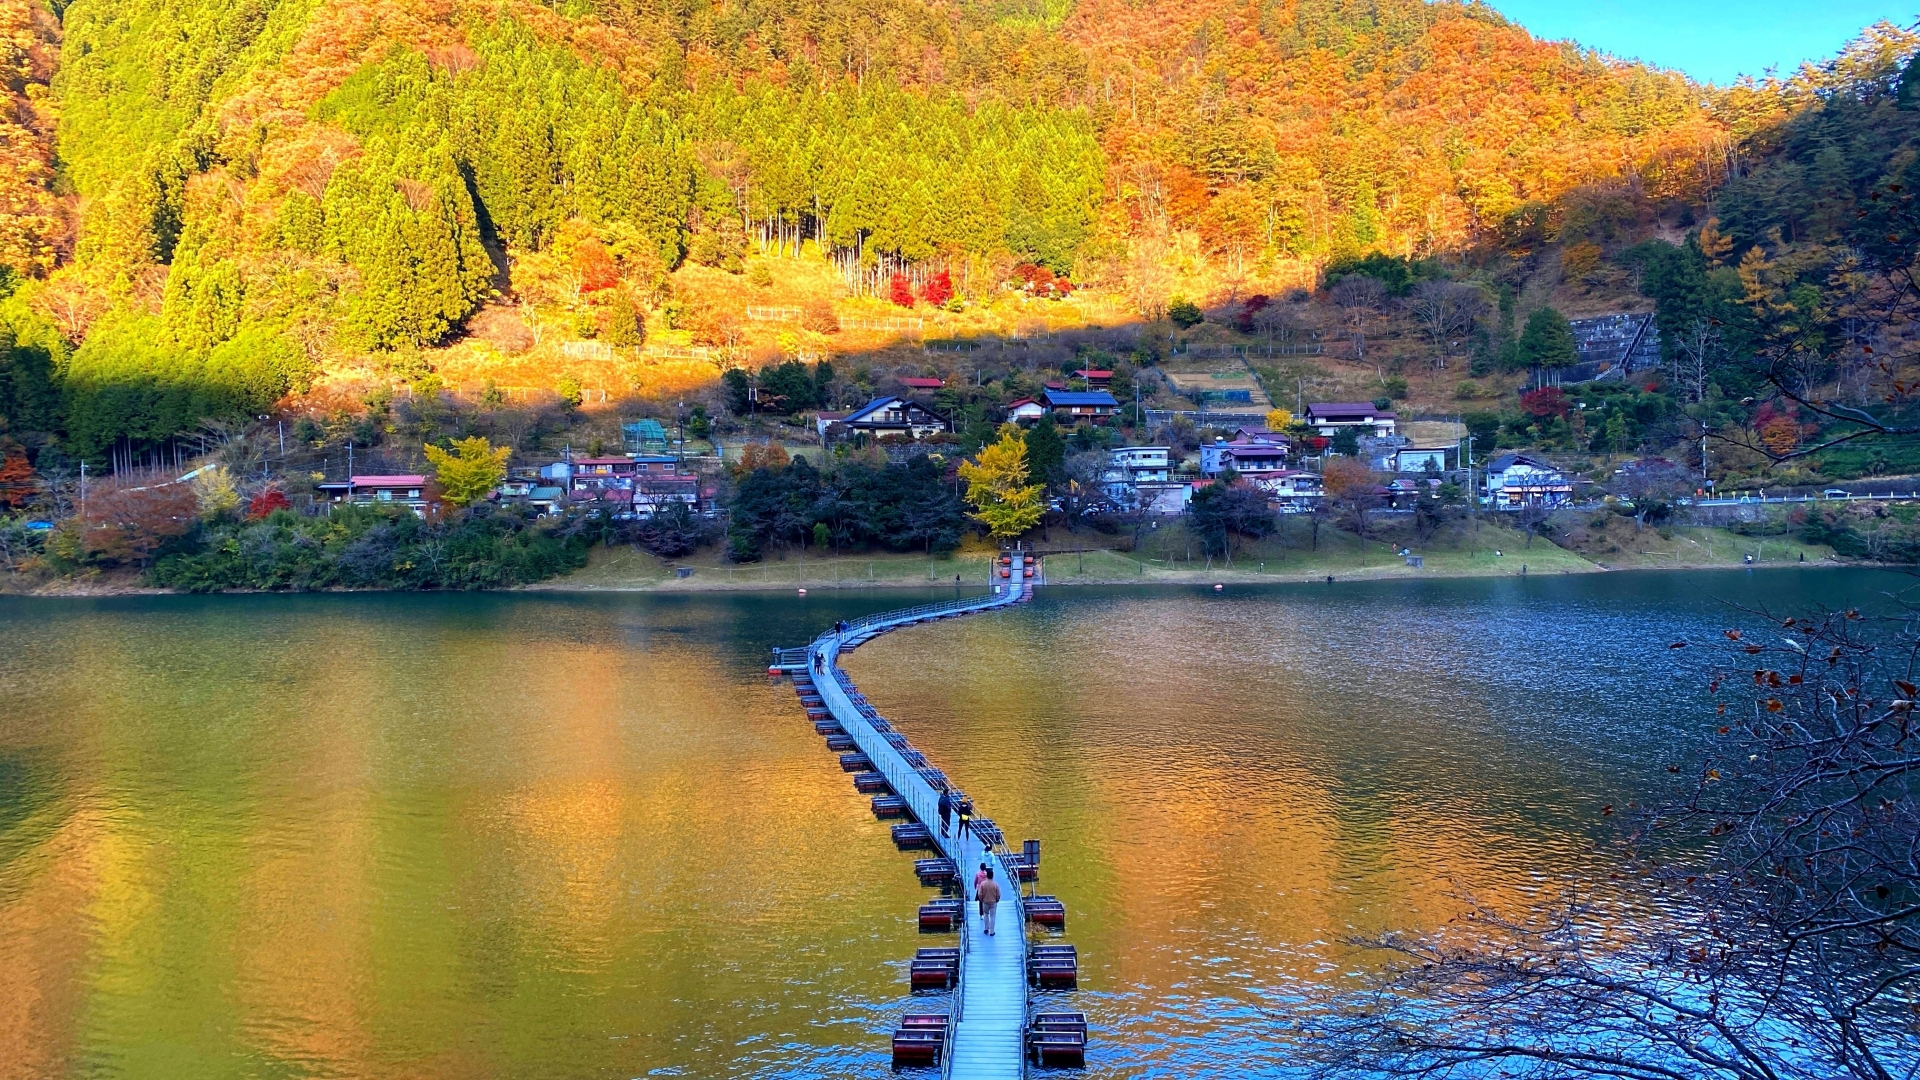 Tozura Floating Bridge, Lake Okutama